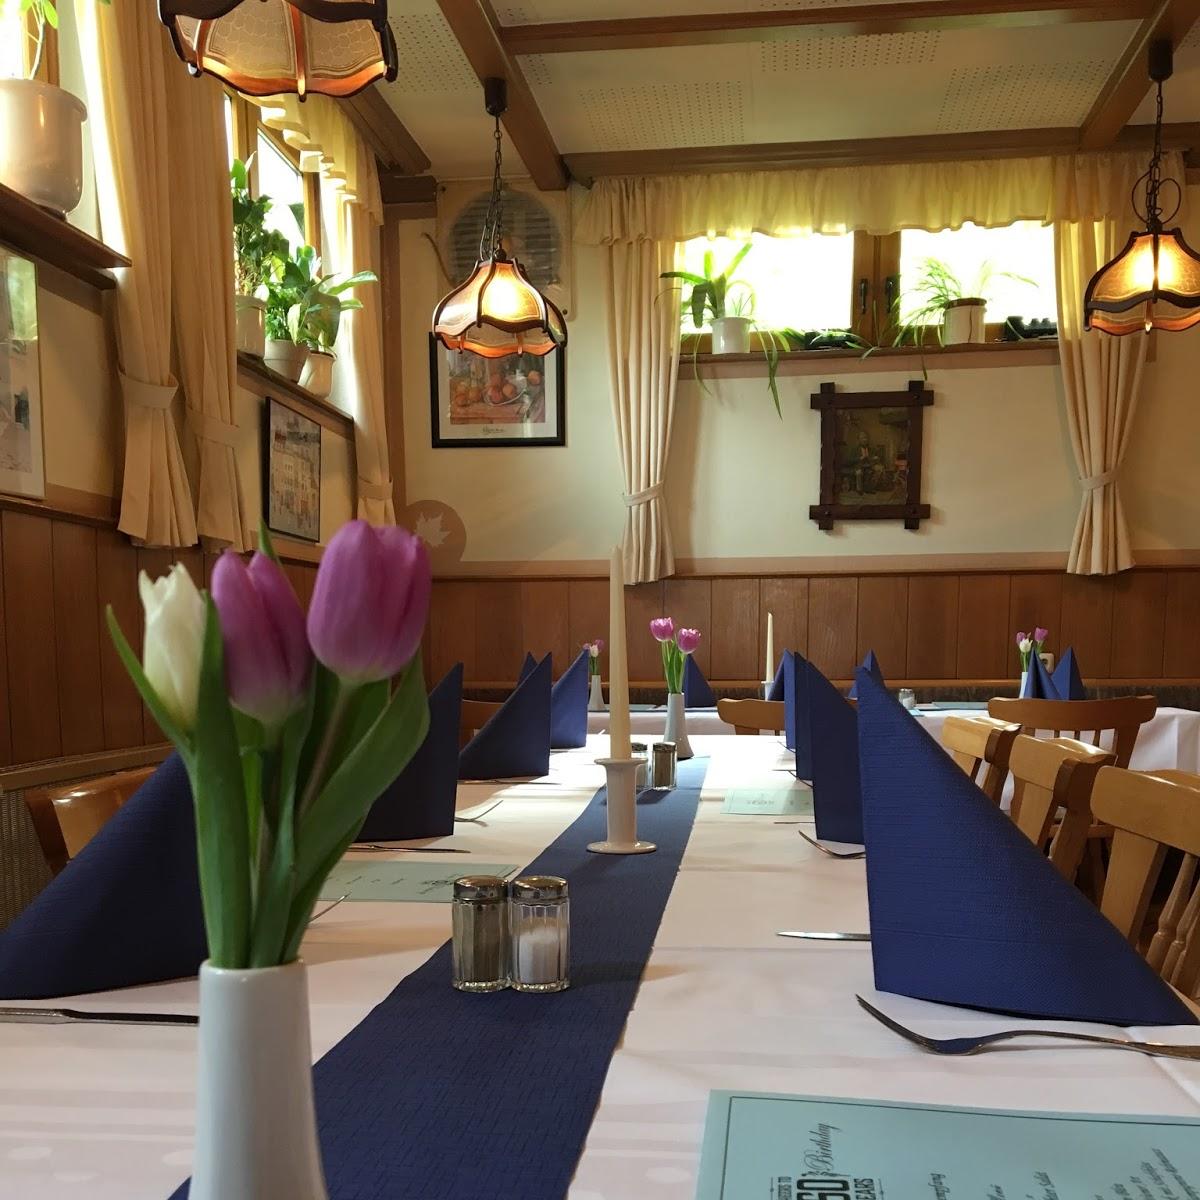 Restaurant "Zur alten Schmiede" in Oberursel (Taunus)